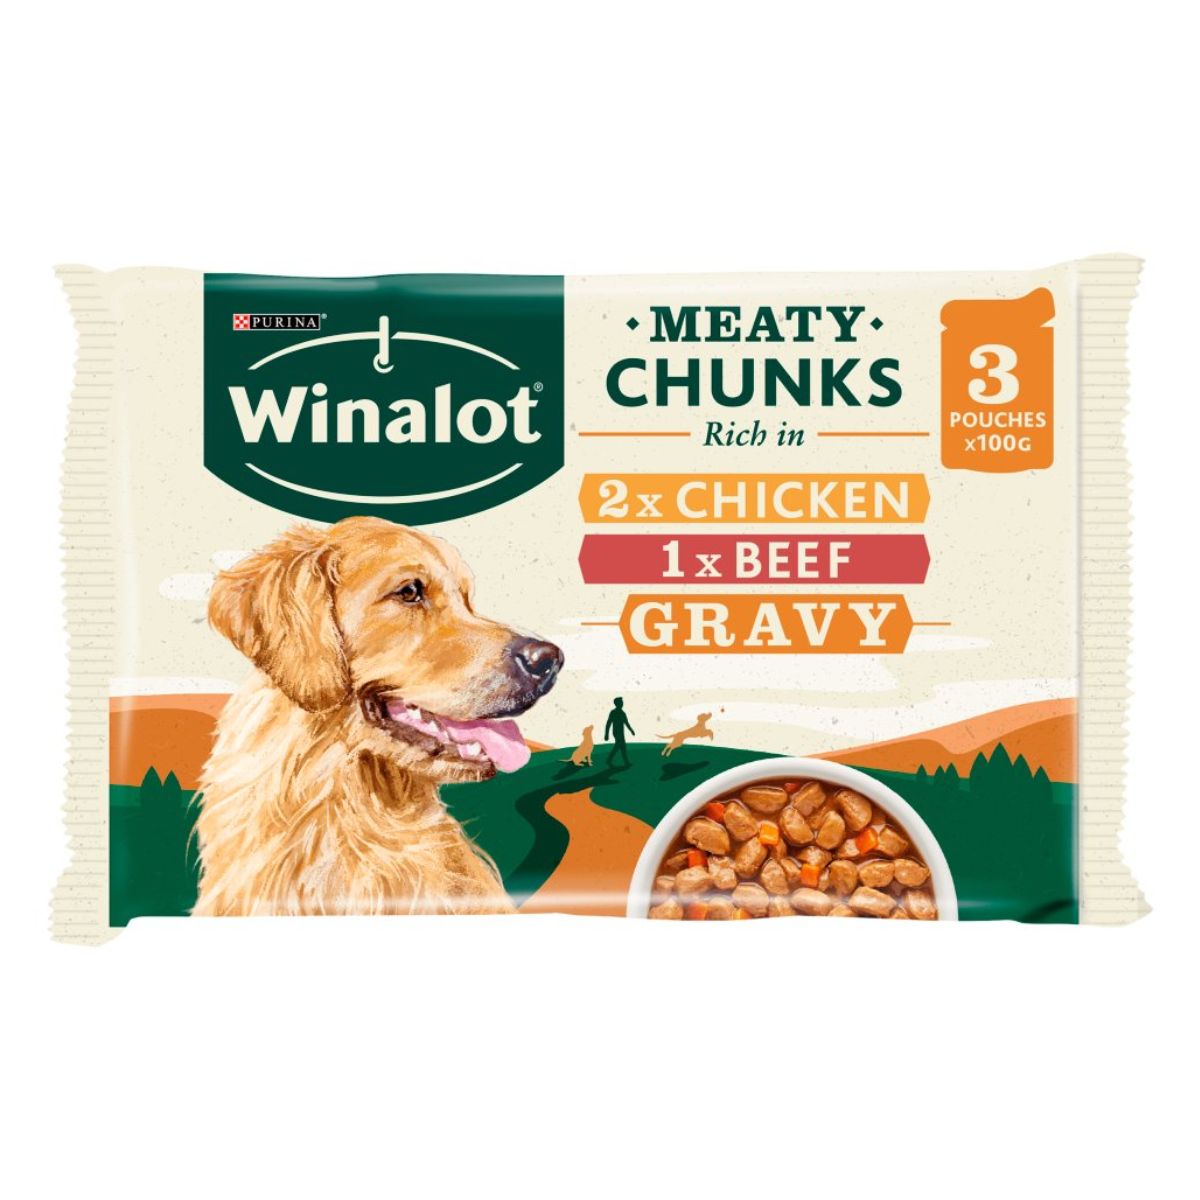 Purina - Winalot Meaty Chunks in Gravy - 3 x 100g dog food.